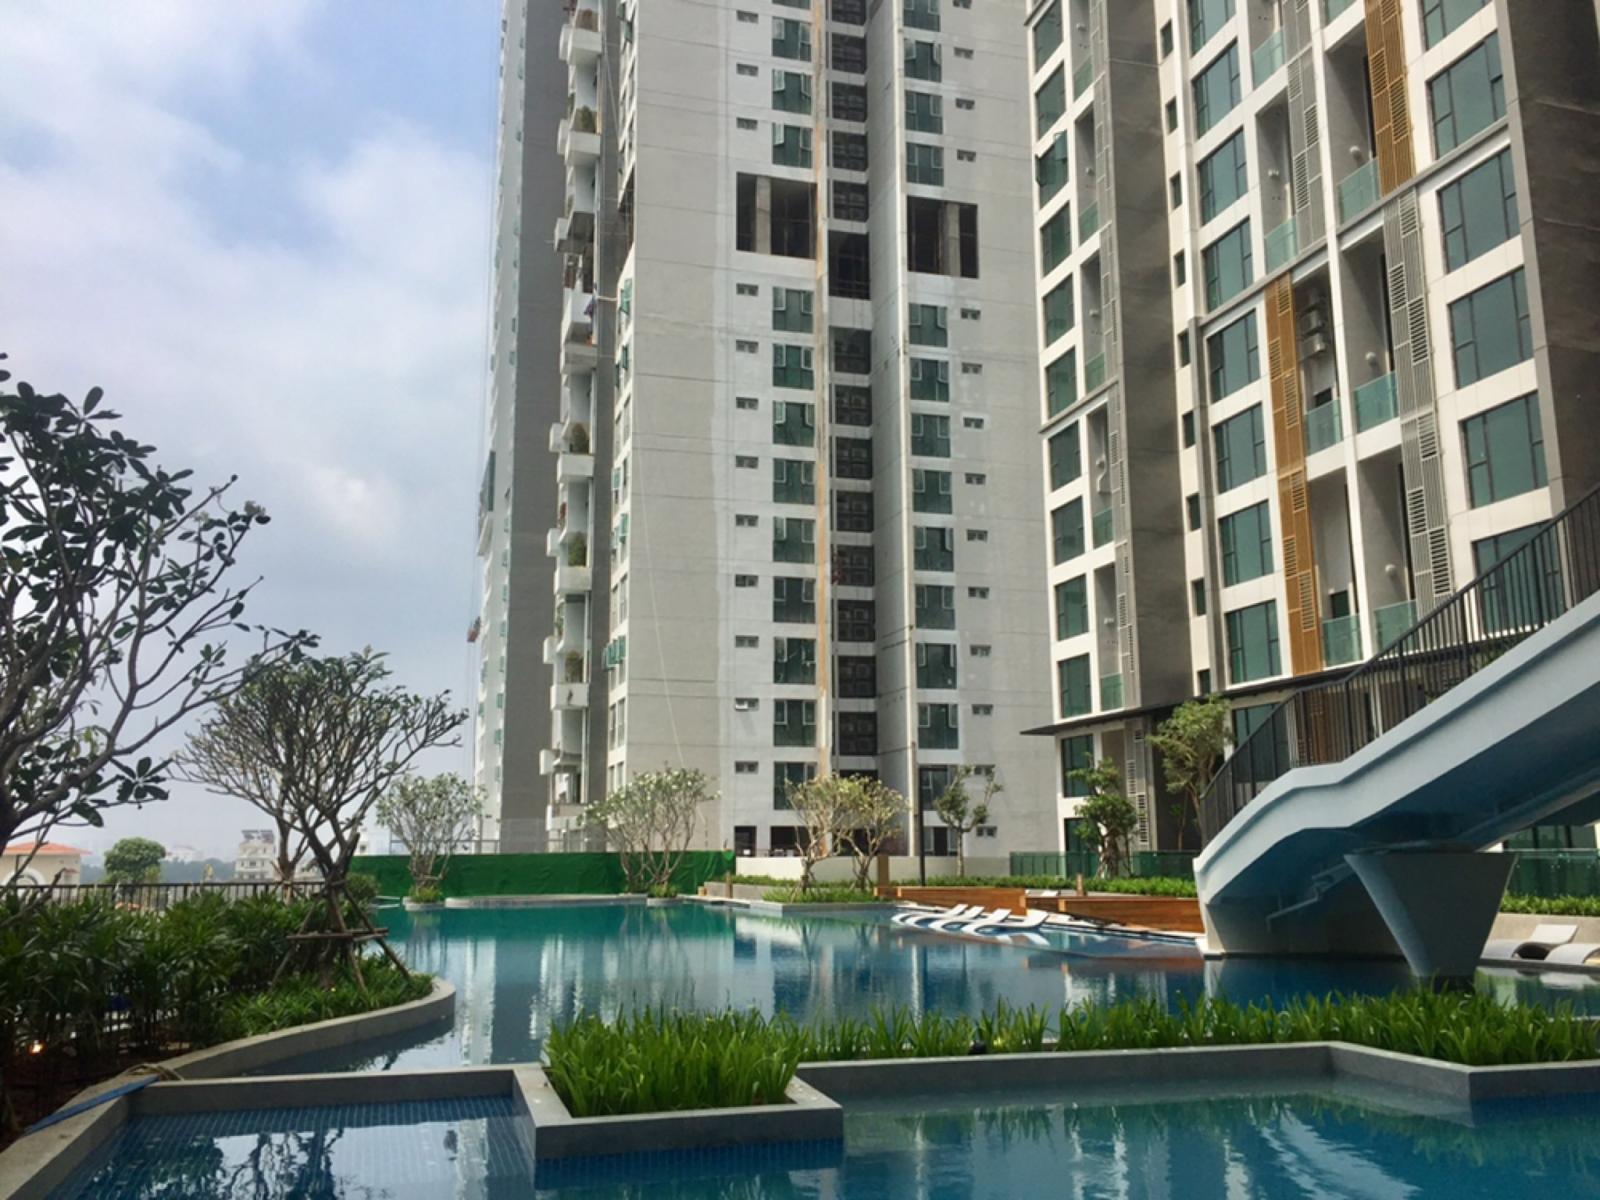 Hình ảnh cận cảnh một bể bơi trong xanh nằm dưới chân tòa nhà chung cư cao tầng.